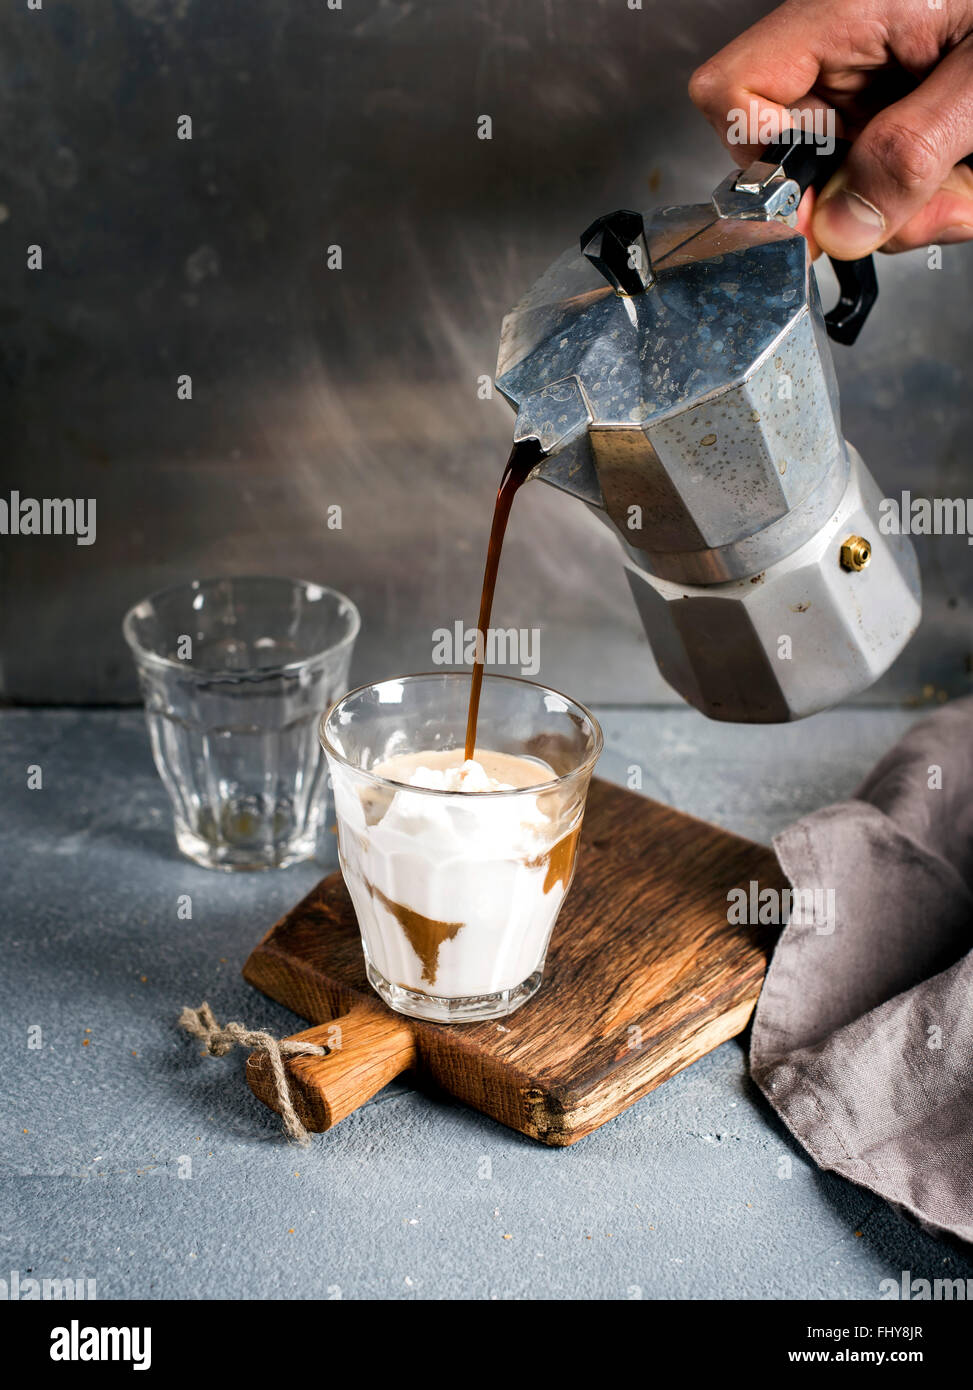 Ein Glas Kaffee mit Eis auf einem rustikalen Holzbrett. Getränk wird aus einer italienischen Moka-Stahltopf Besitz des Mannes Hand Gre gegossen. Stockfoto